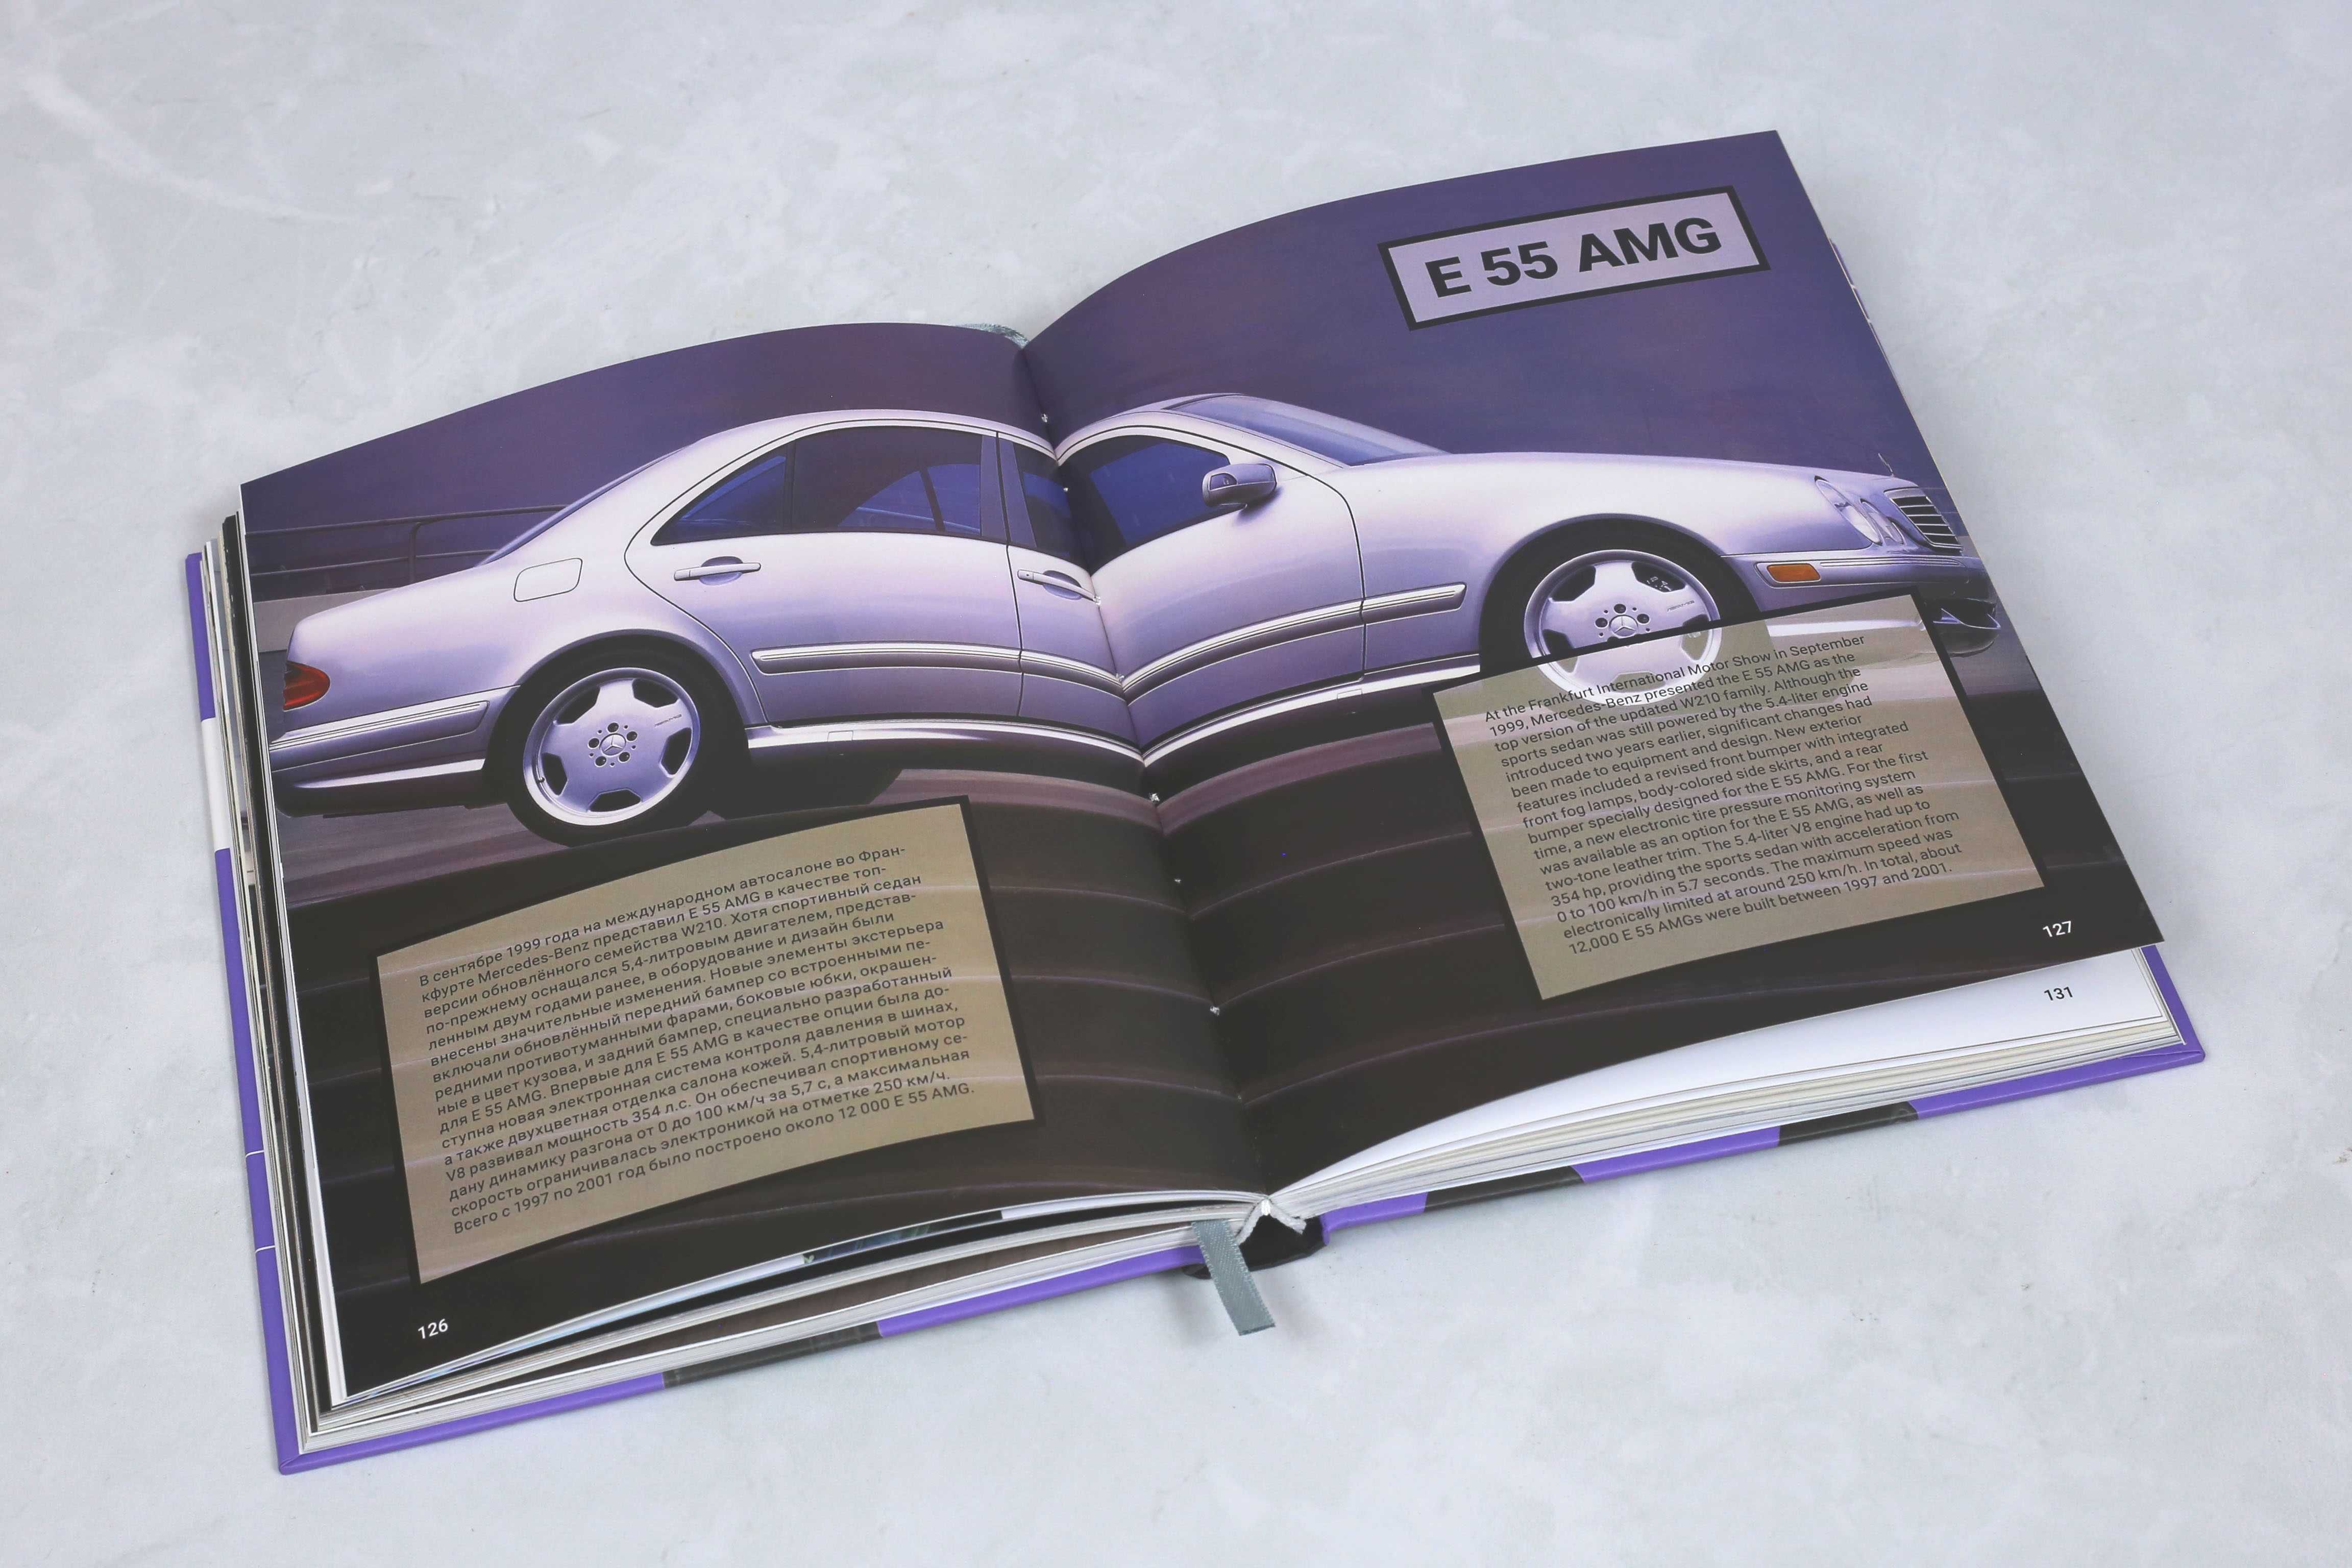 Mercedes-Benz W210 o carte nouă